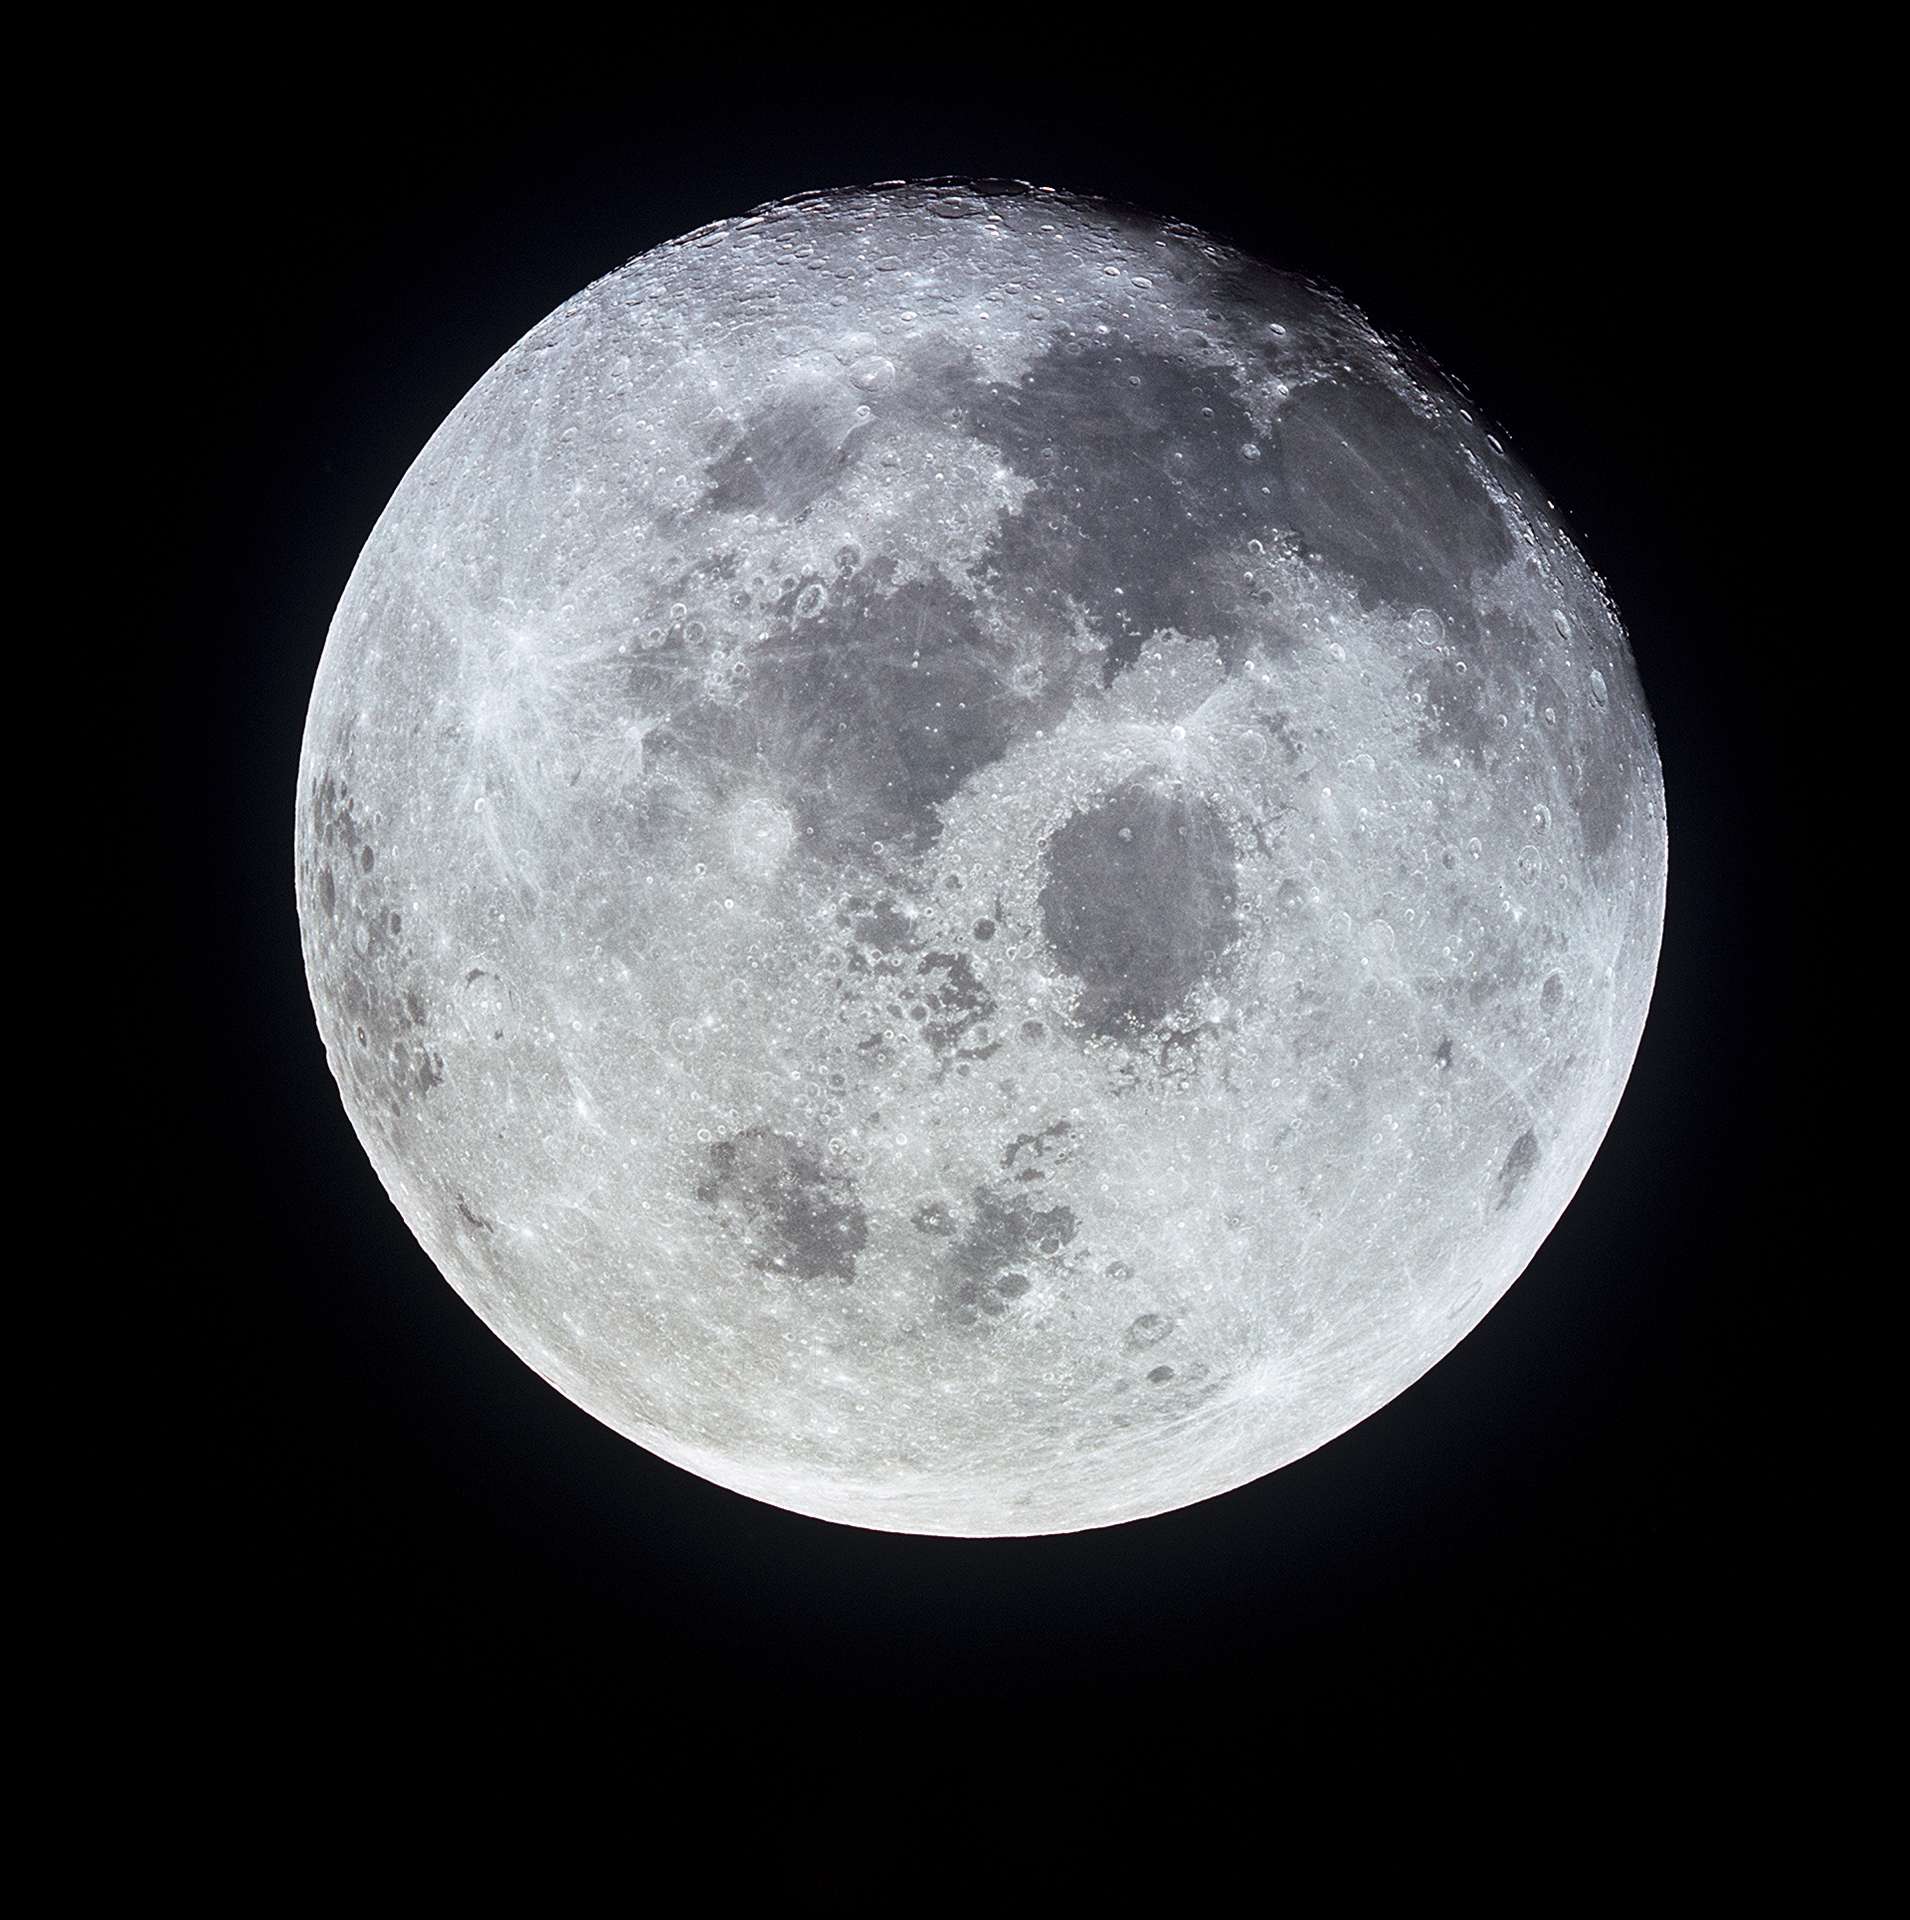 La ville chinoise de Chengdu envisage dâ€™envoyer une seconde lune artificielle dans lâ€™espace pour renforcer la lumiÃ¨re de la Lune afin de remplacer lâ€™Ã©clairage public. Â© Nasa